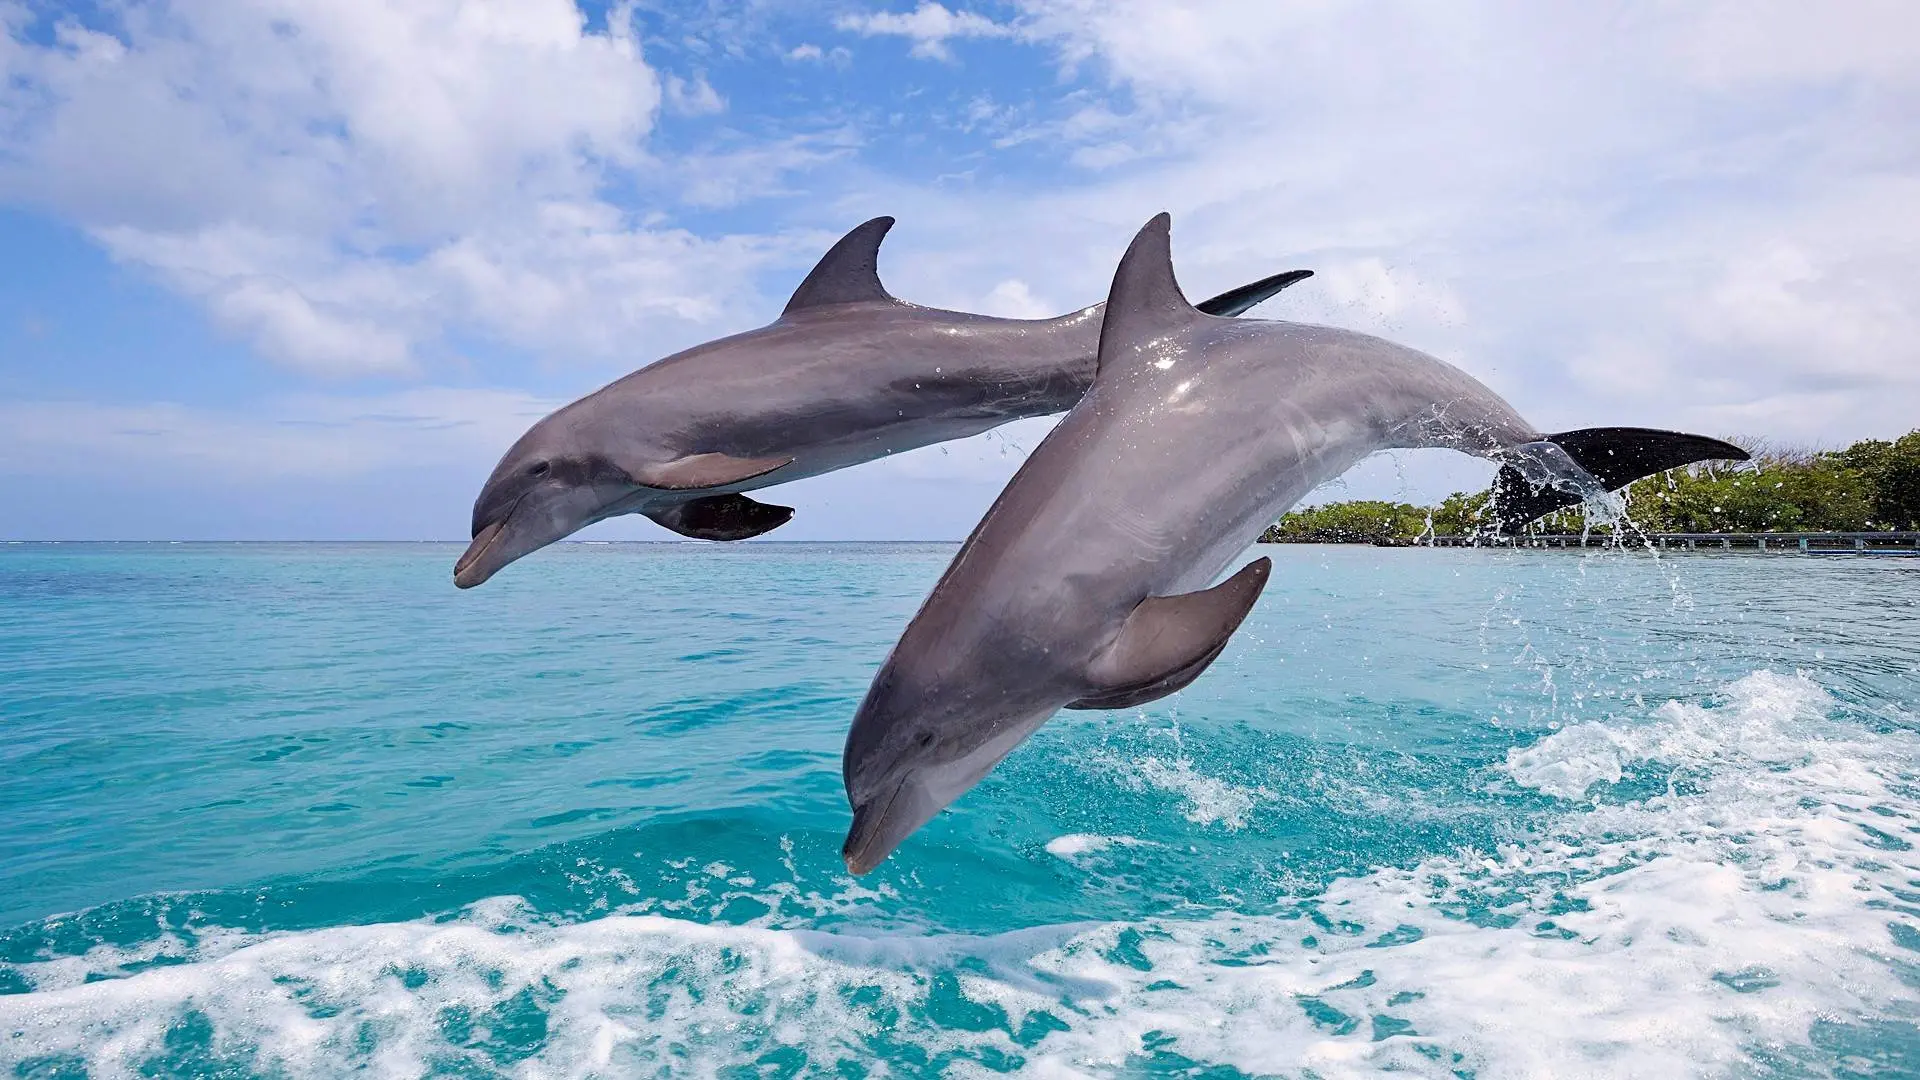 科学家们将海豚的回声定位信号转换成了图片，终于看到了它们角度人类的样子：迷迷糊糊还有点可爱…还有可能被海豚之间传来传去… | 英国那些事儿